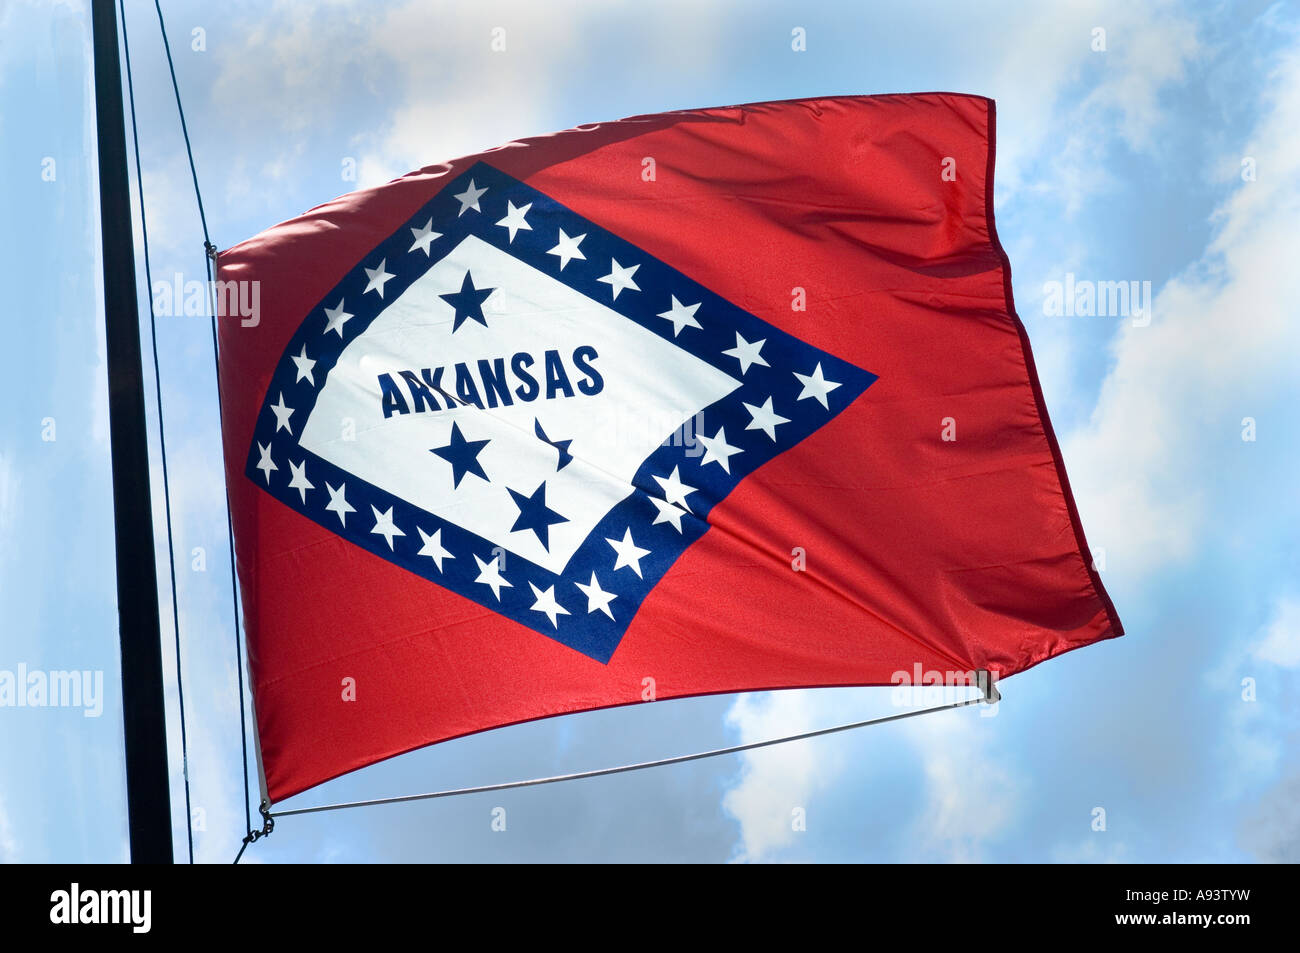 Arkansas state flag, Little Rock, Arkansas Foto Stock